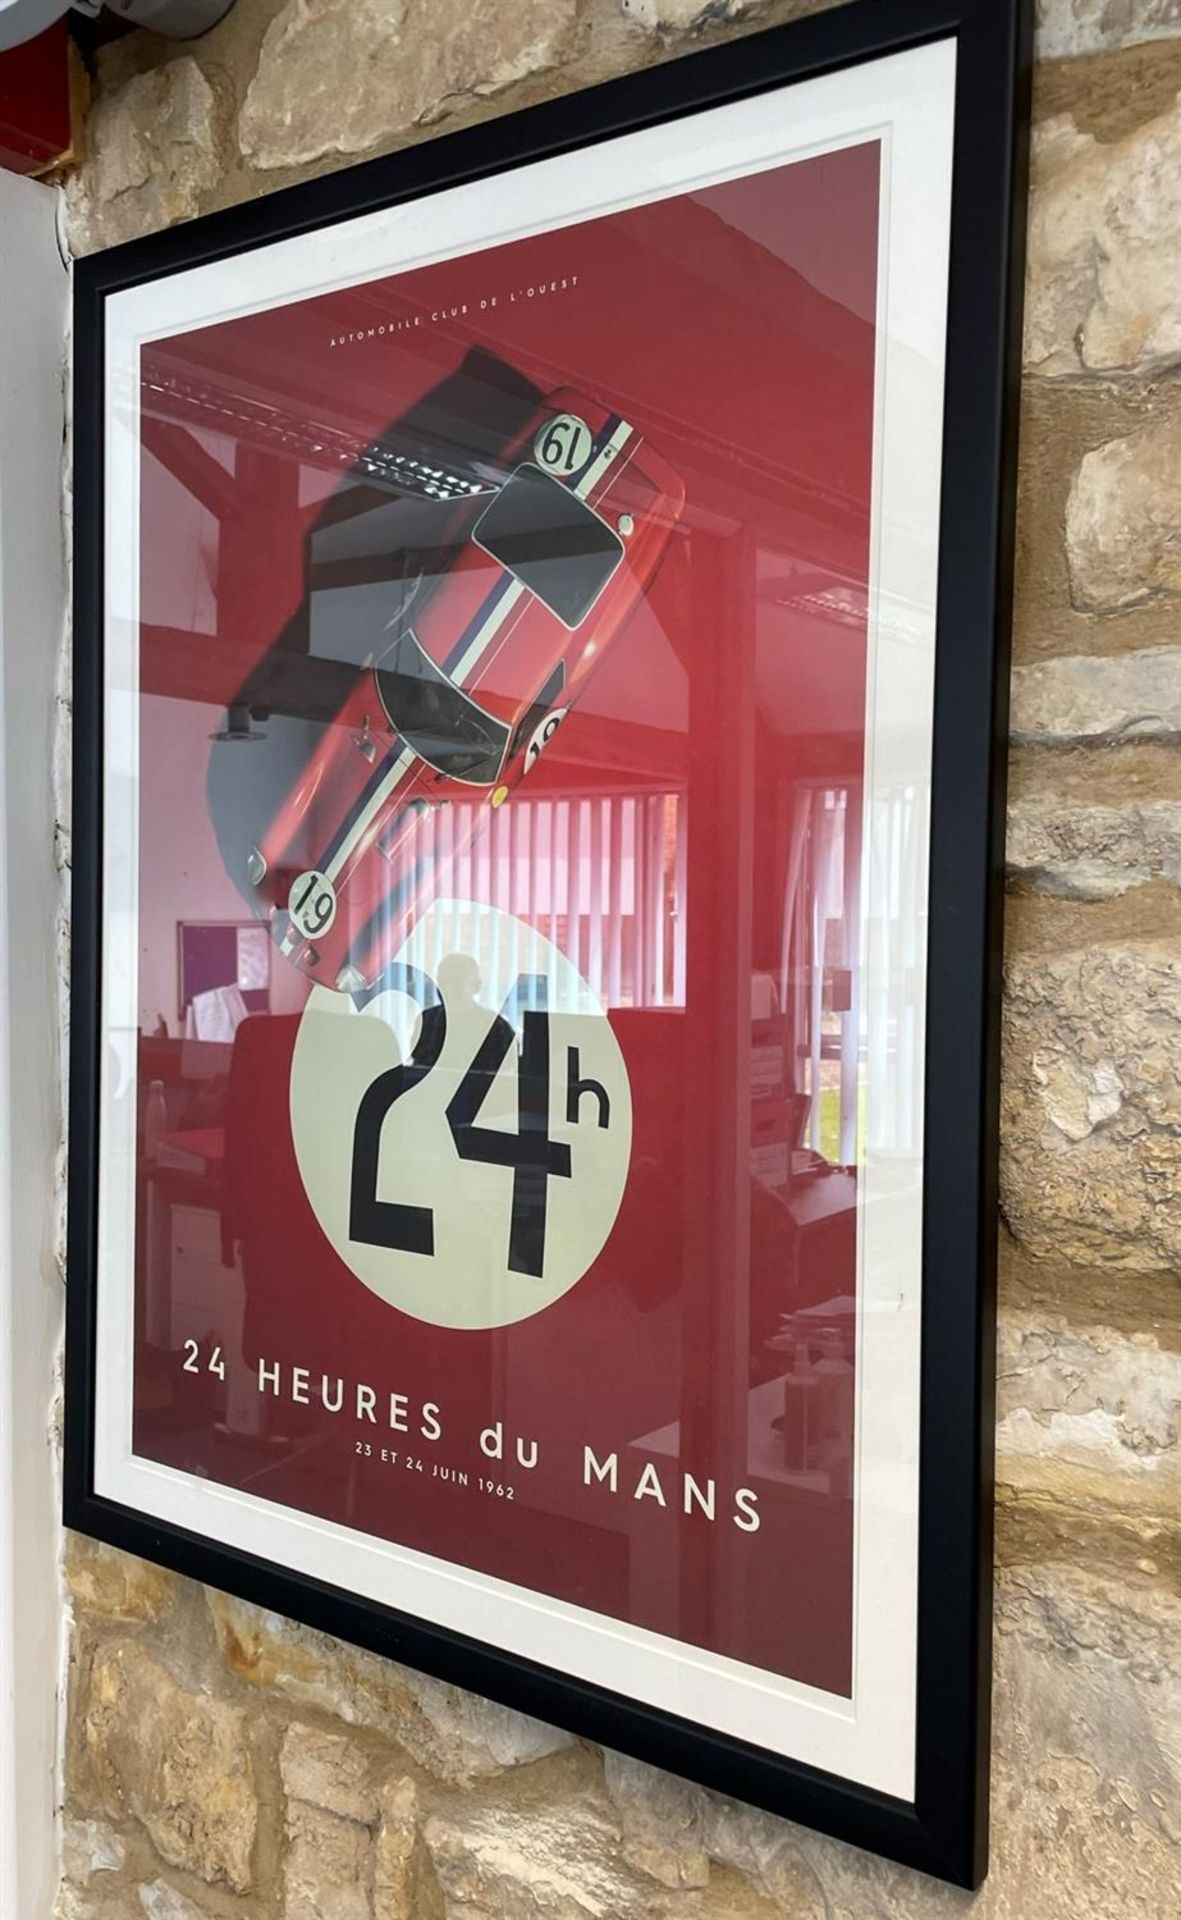 24 Heures du Mans Ferrari 250 GTO Framed Poster - Image 2 of 6